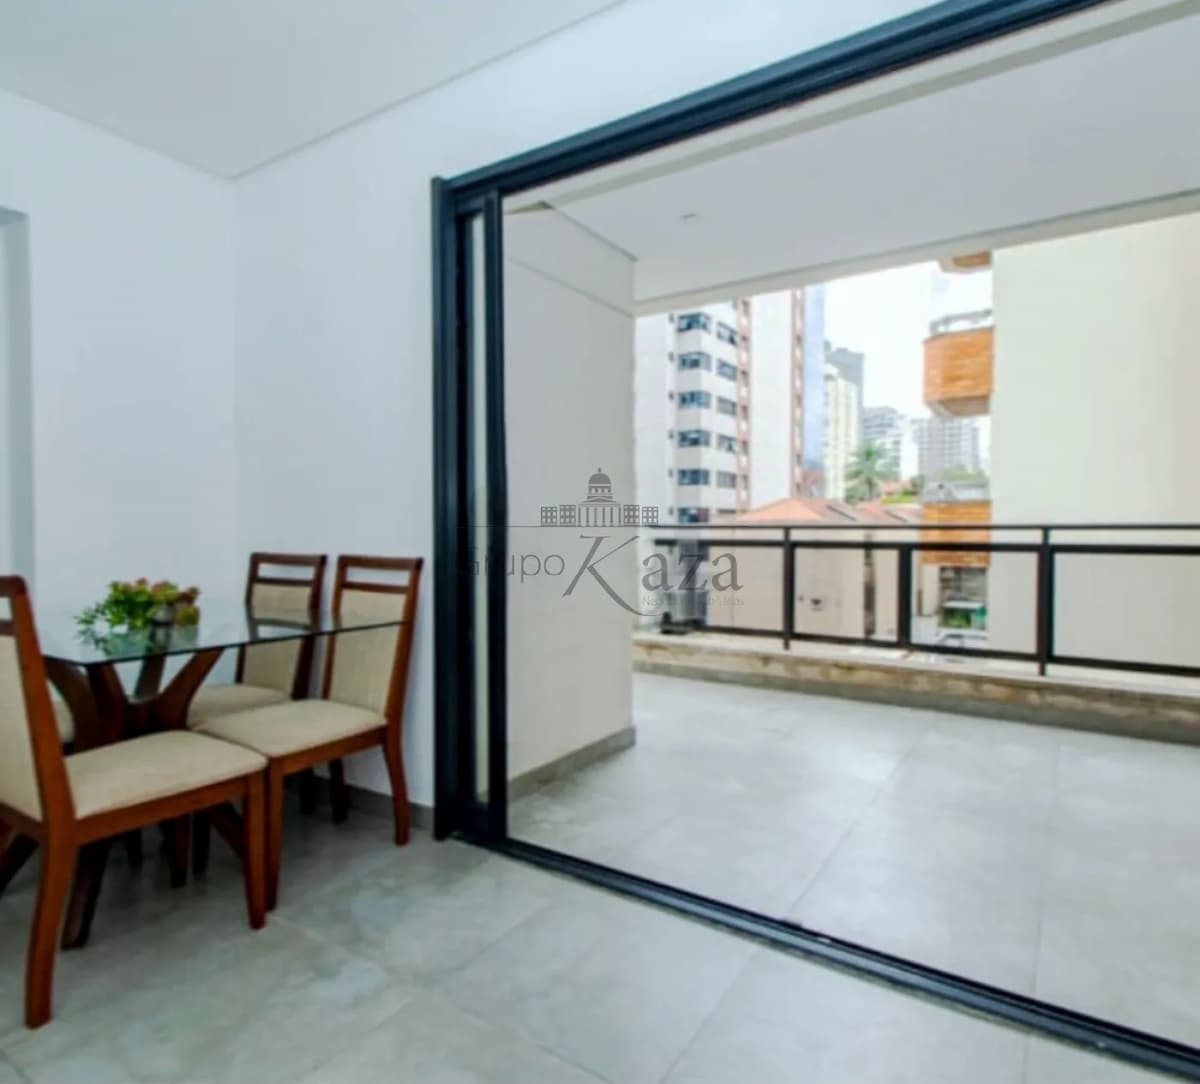 Foto 2 de Apartamento Padrão em Pinheiros, São Paulo - imagem 2